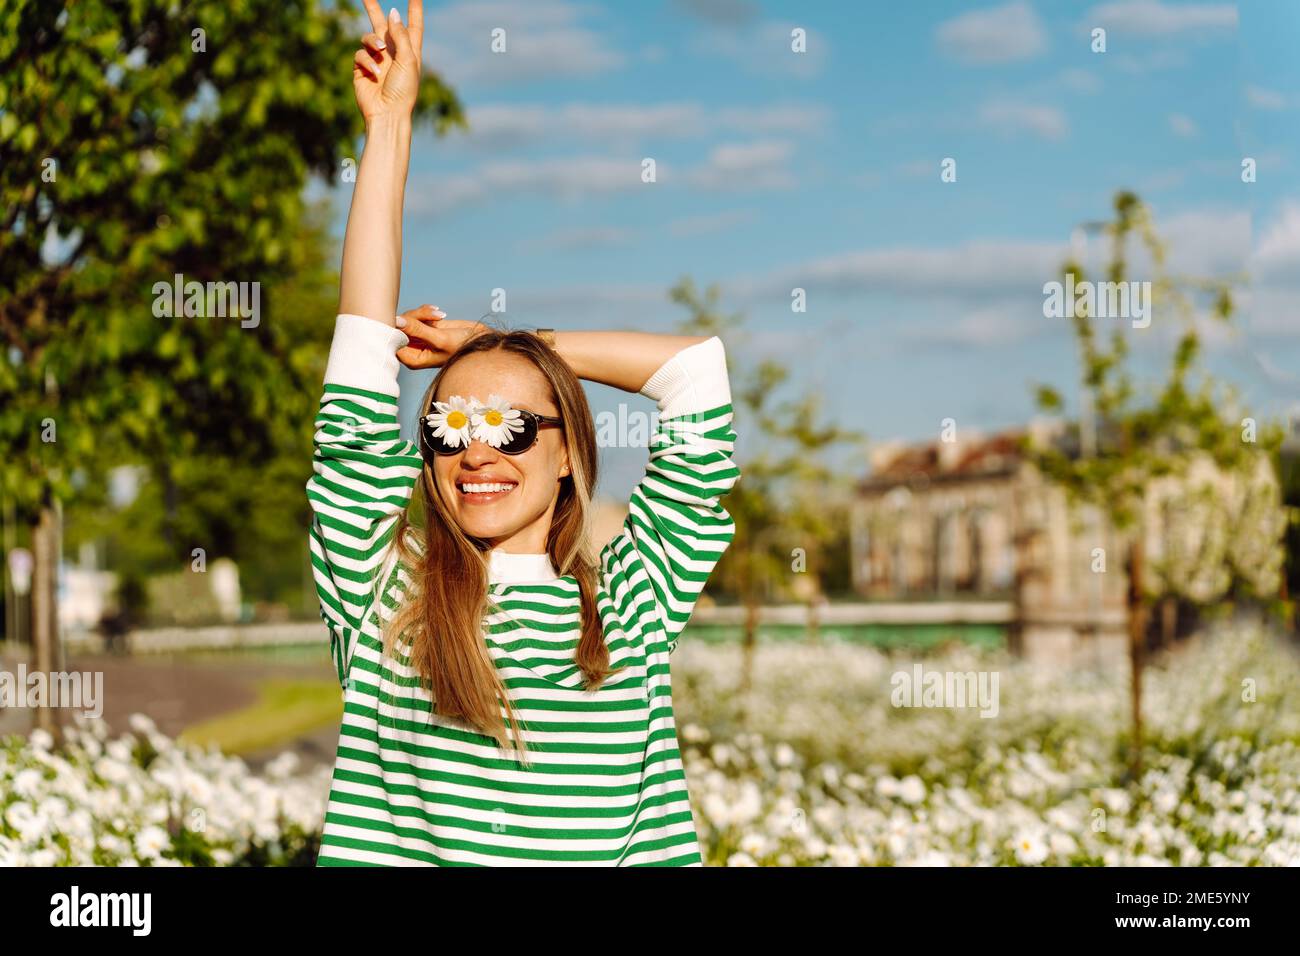 Una donna dai capelli lunghi con margherite sugli occhiali sorride felicemente con la mano in su. Foto Stock